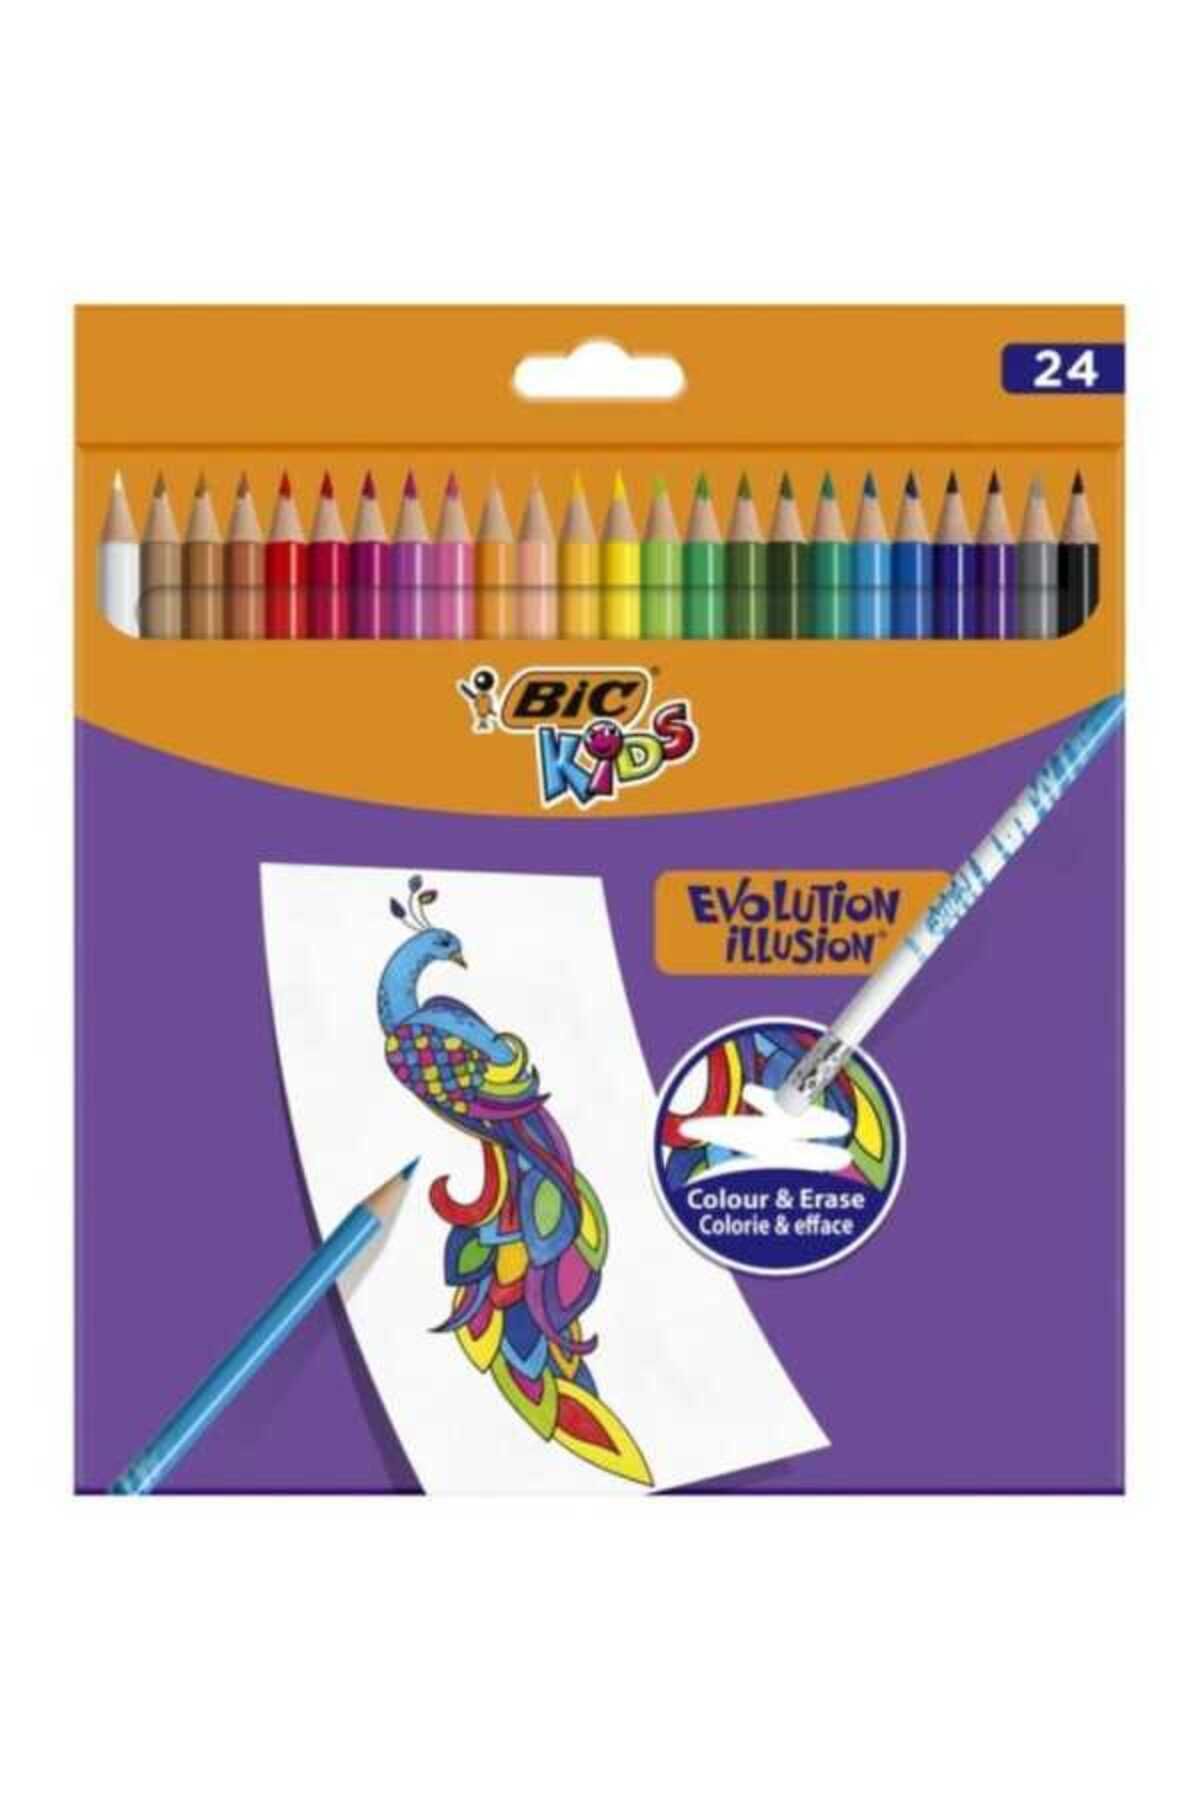 Bic Silinebilir Kuru Boya Kalemi 24 Renk